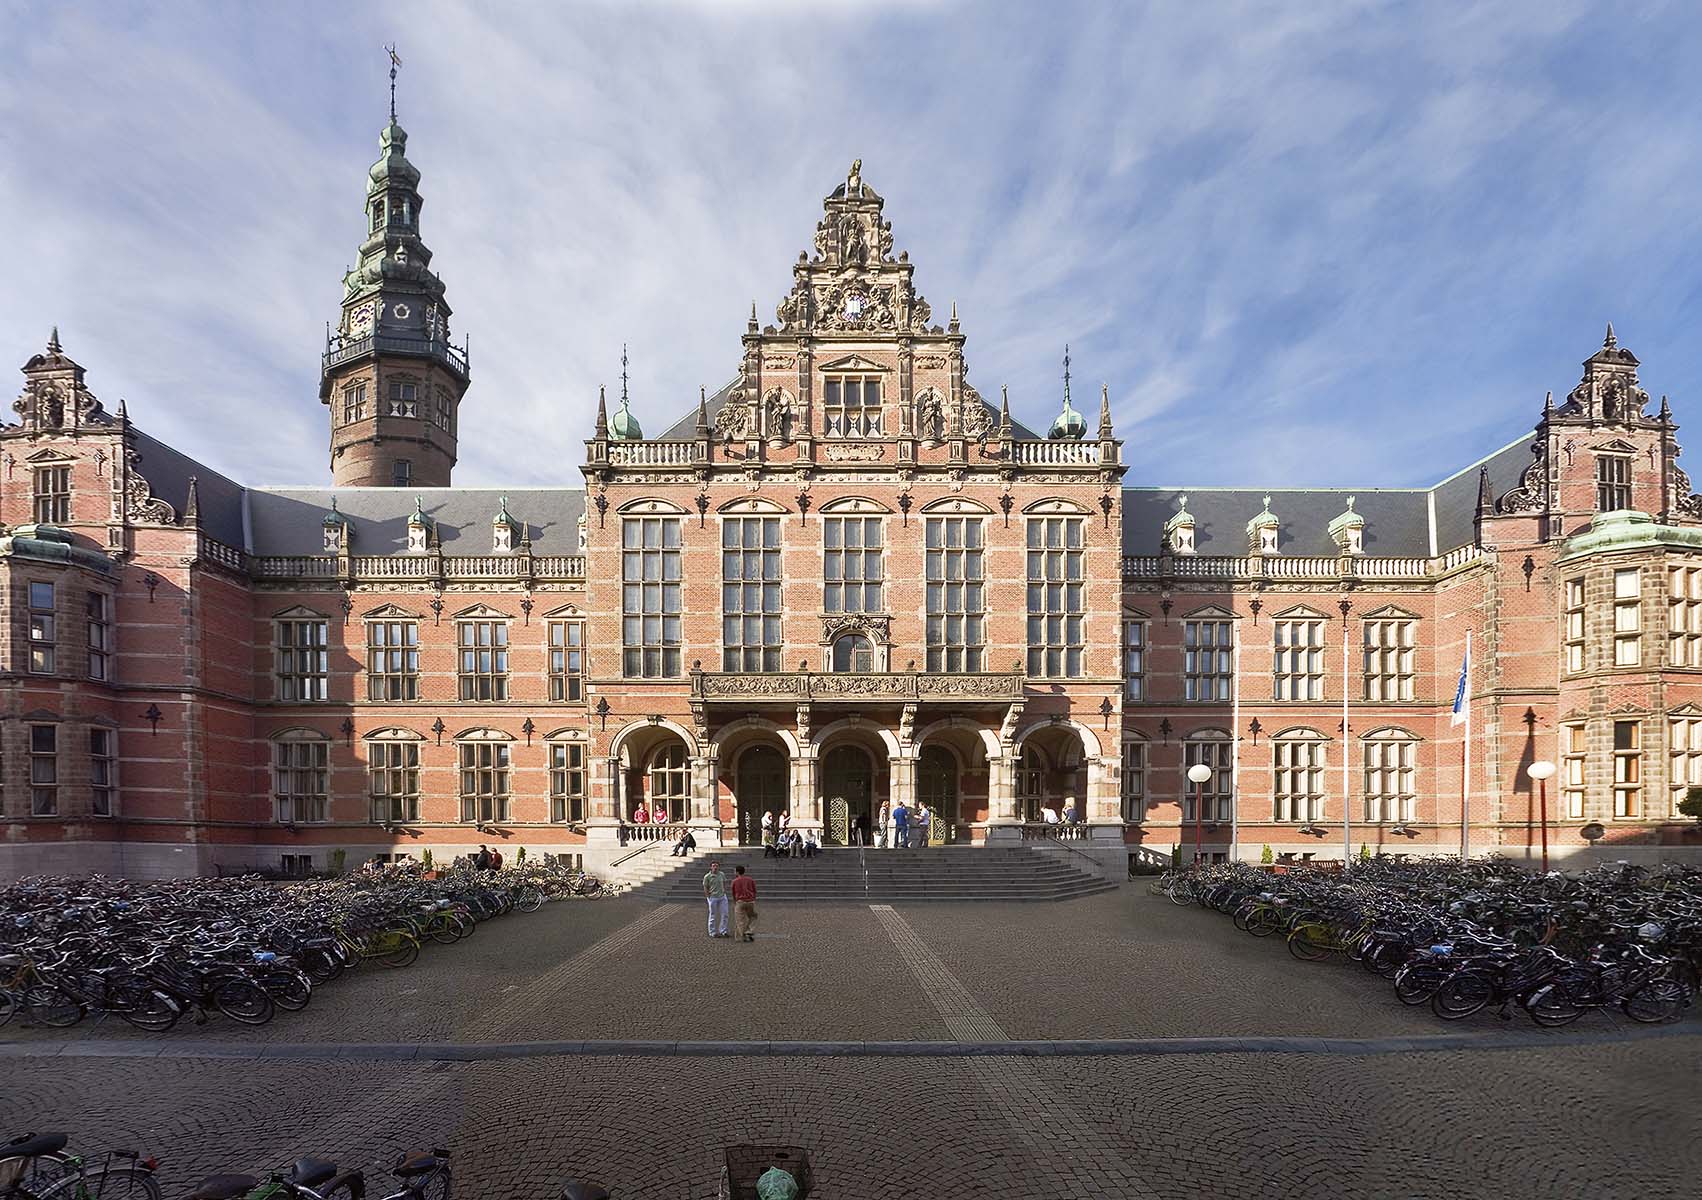 University of Groningen